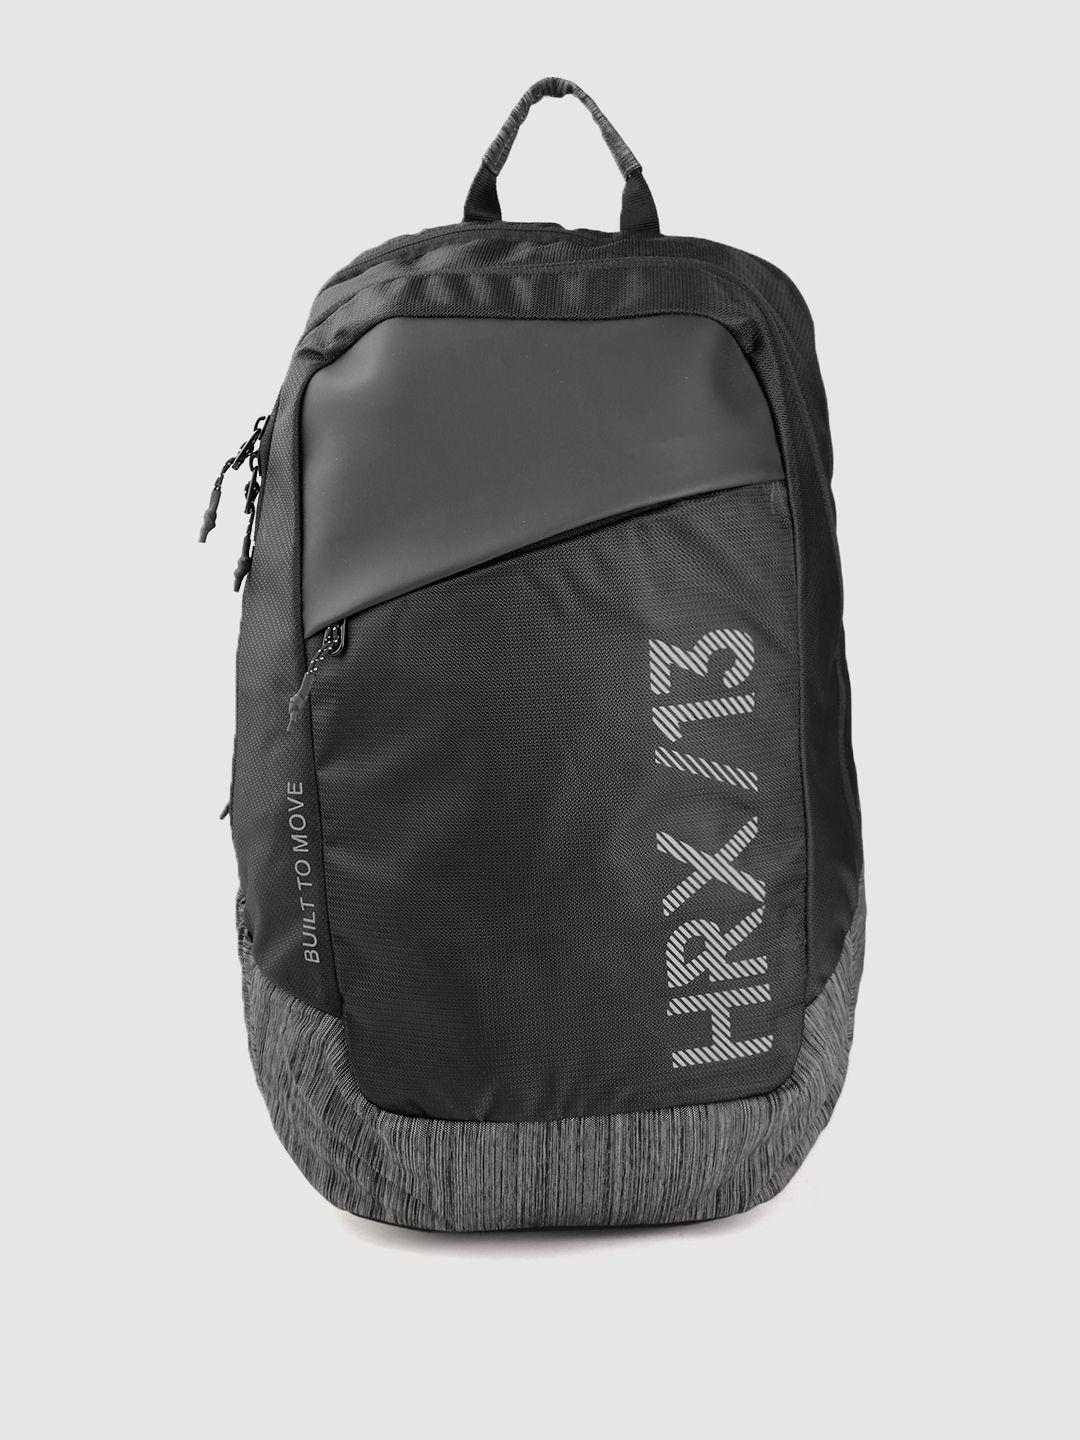 hrx by hrithik roshan unisex black & grey brand logo backpack 29.4 l